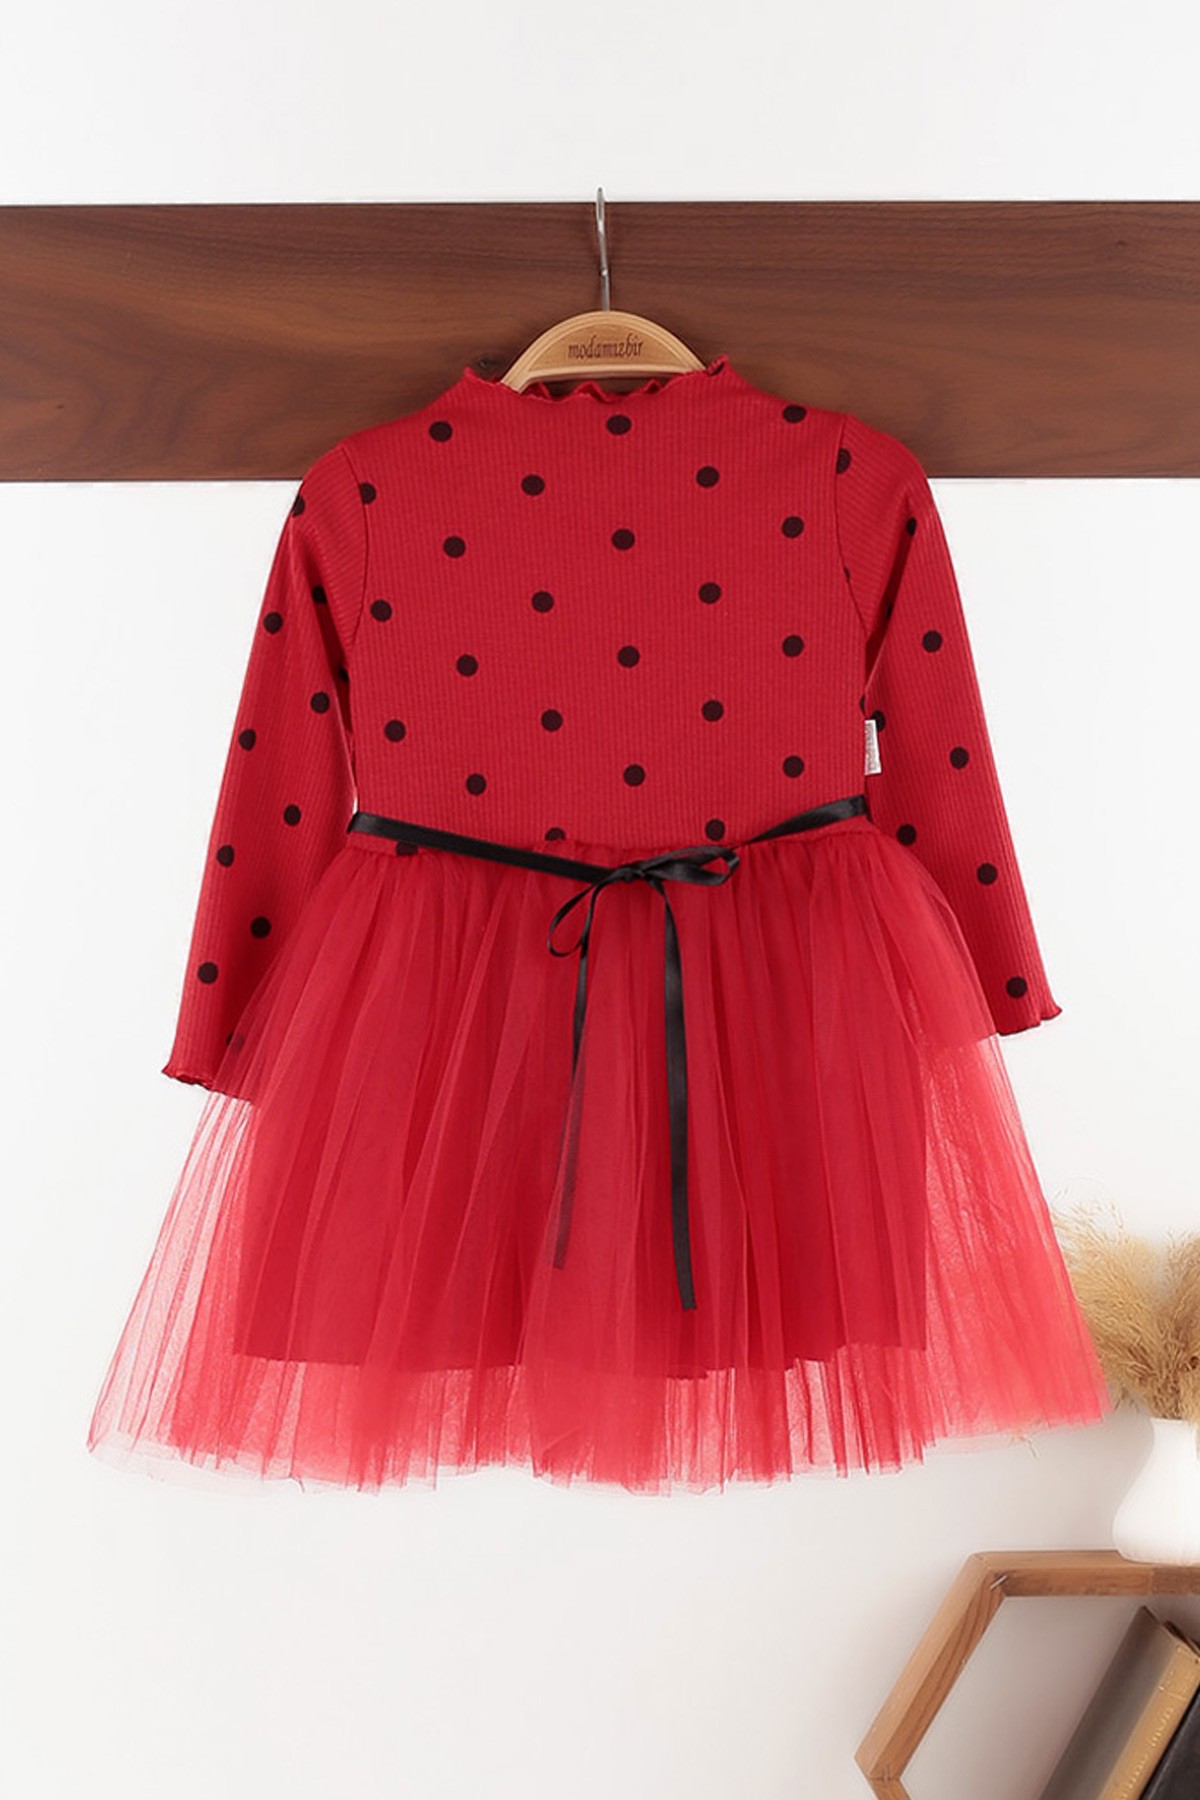 Kırmızı (5-7 yaş) Puanlı Tüllü Kız Çocuk Elbise 129306